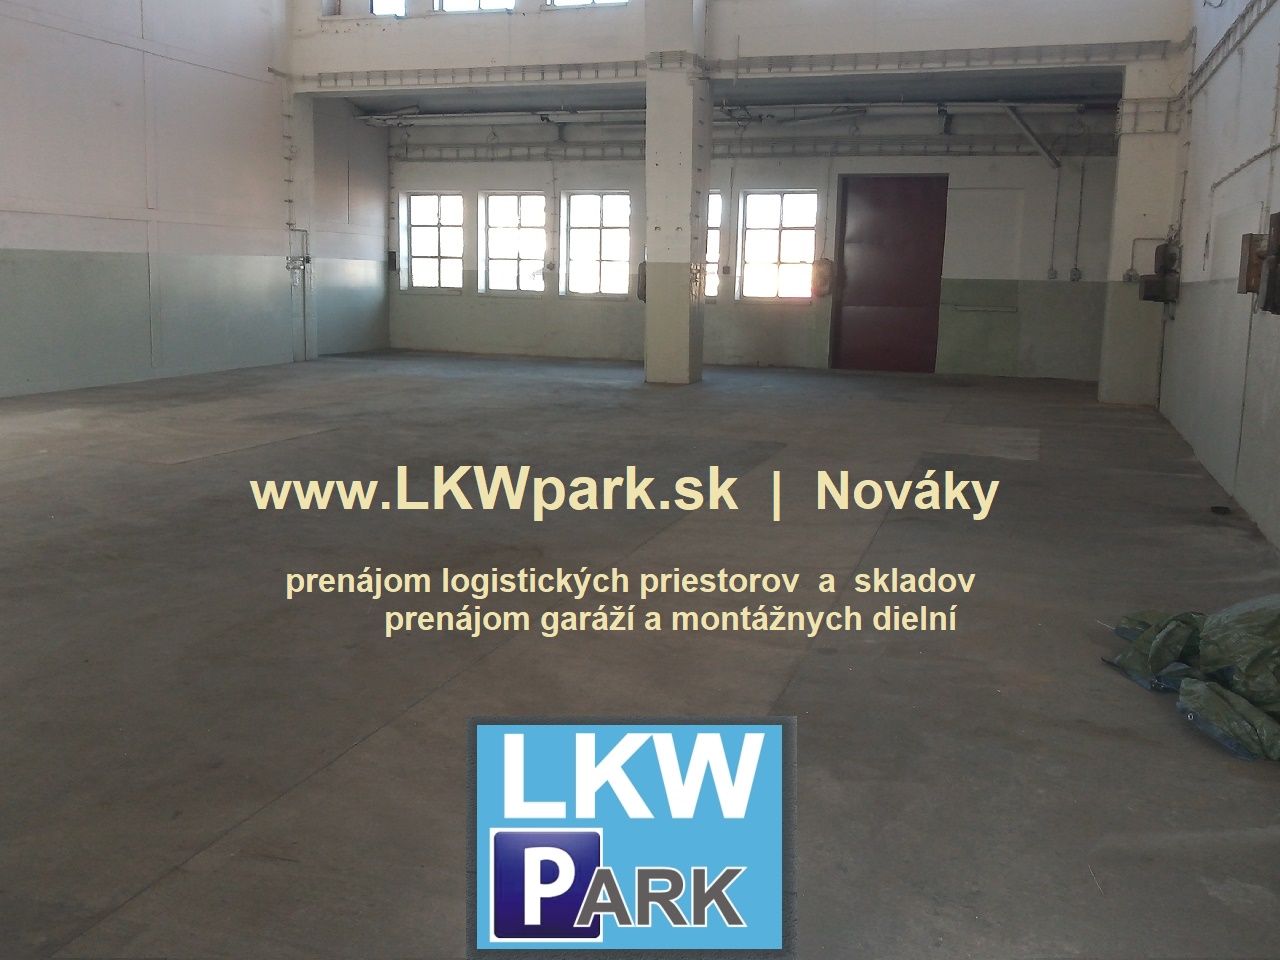 LKW PARK | sklady na prenájom v Novákoch